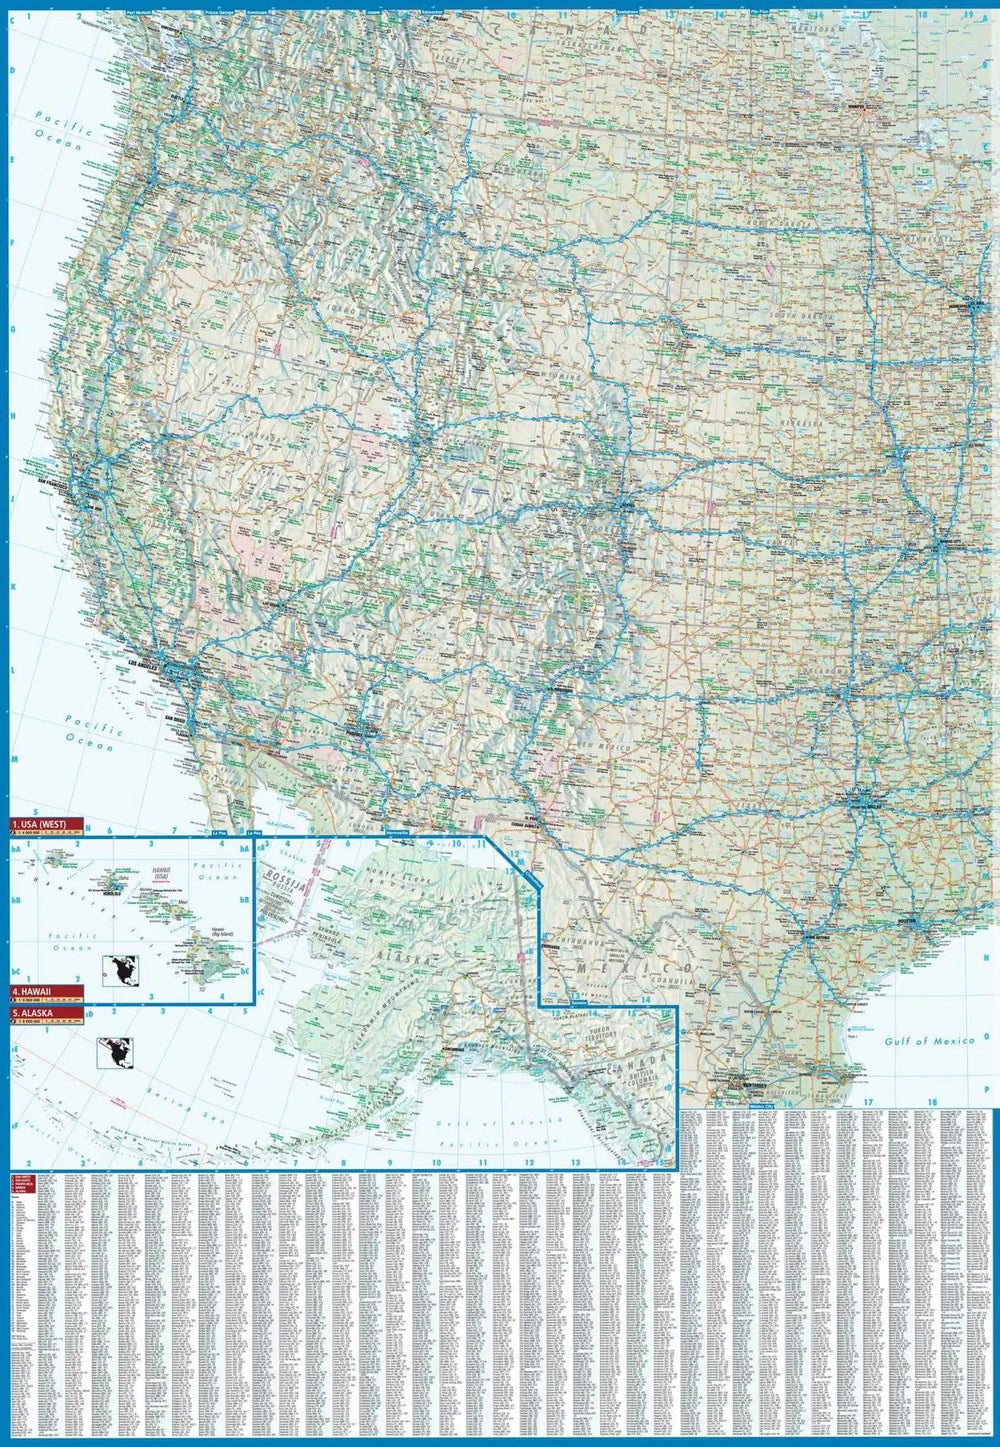 Carte routière plastifiée - USA Interstate | Borch Map carte pliée Borch Map 